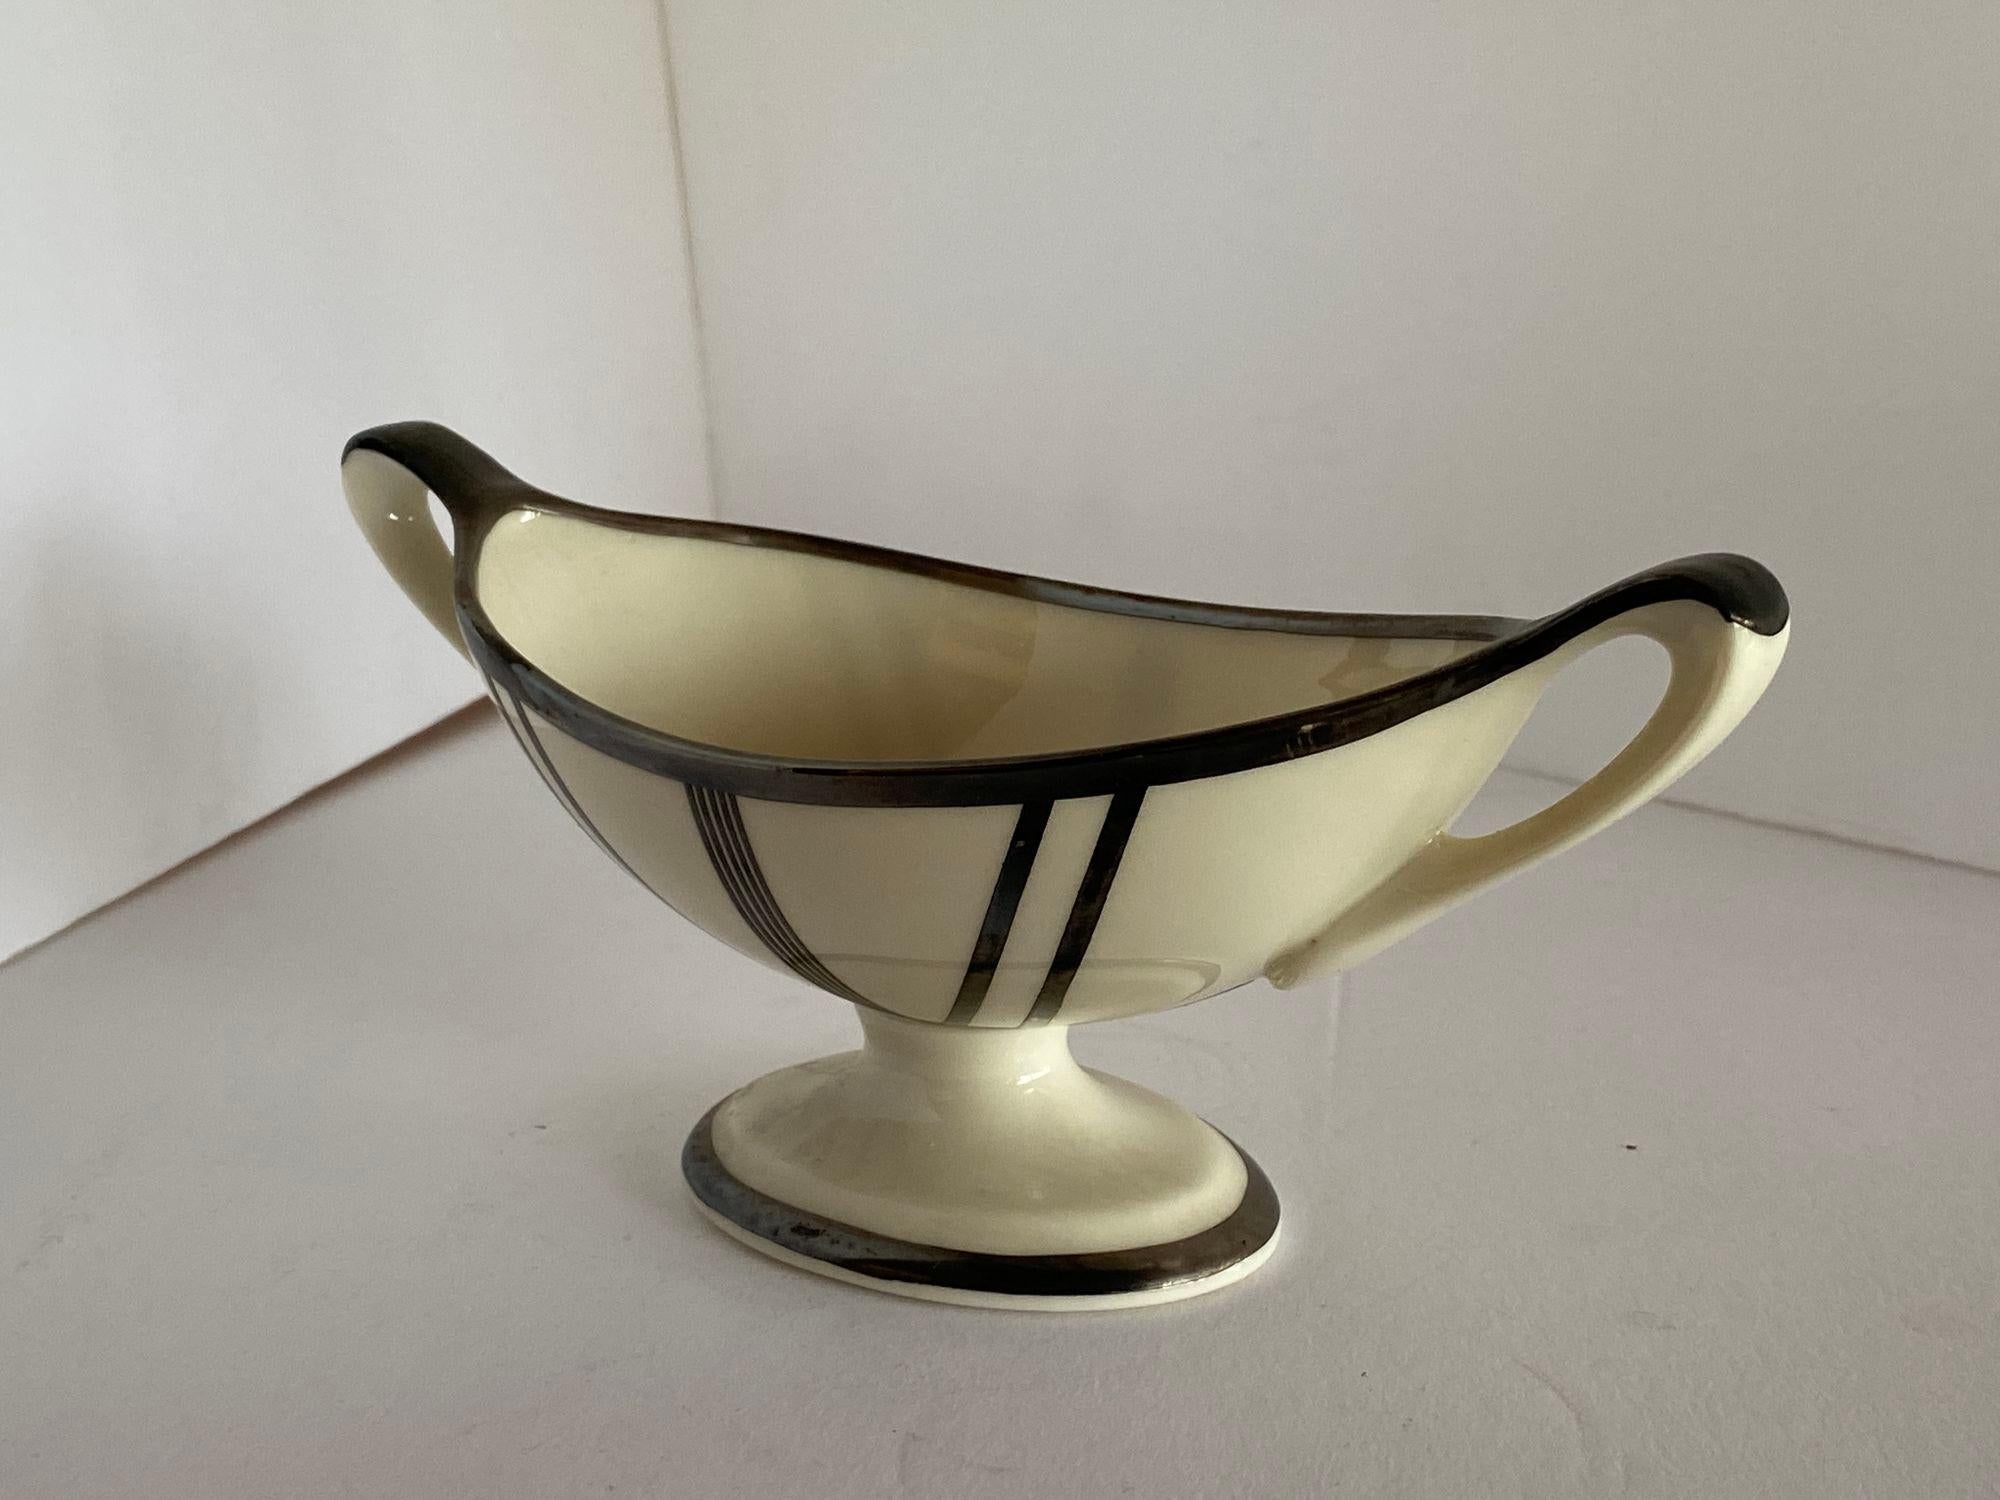 Diese exquisite Zuckerdose, die um 1930 hergestellt wurde, zeigt die zeitlose Eleganz des Art-Déco-Designs mit einer unverwechselbaren, abgestuften Silhouette. Dieses von Lenox hergestellte Stück, das für seine feine Keramik bekannt ist, ist mit